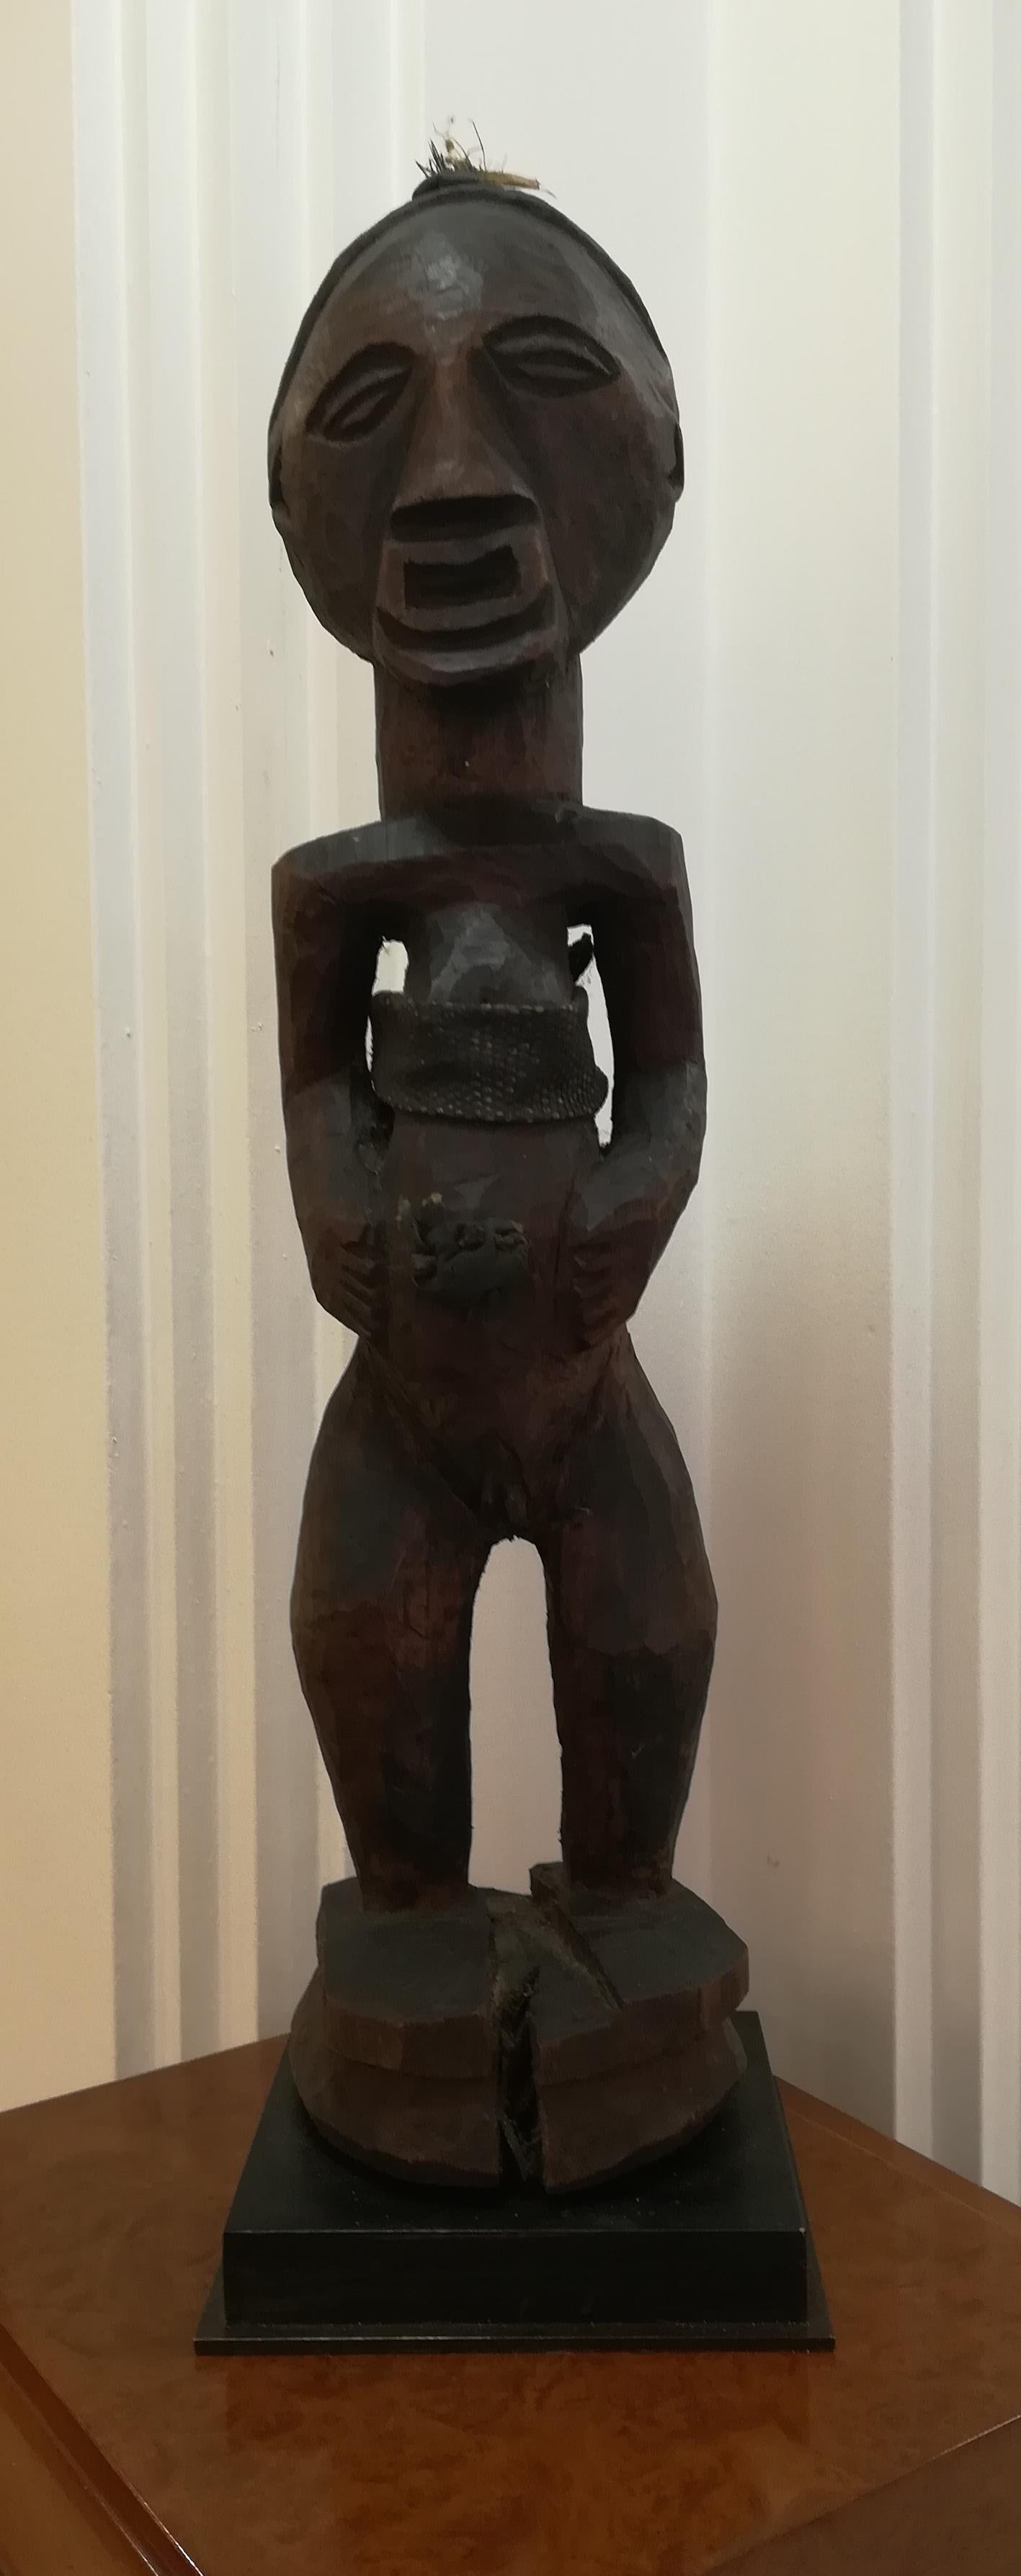 Congo Songye sculpture.
Provenance : Alain de monbrison collection.